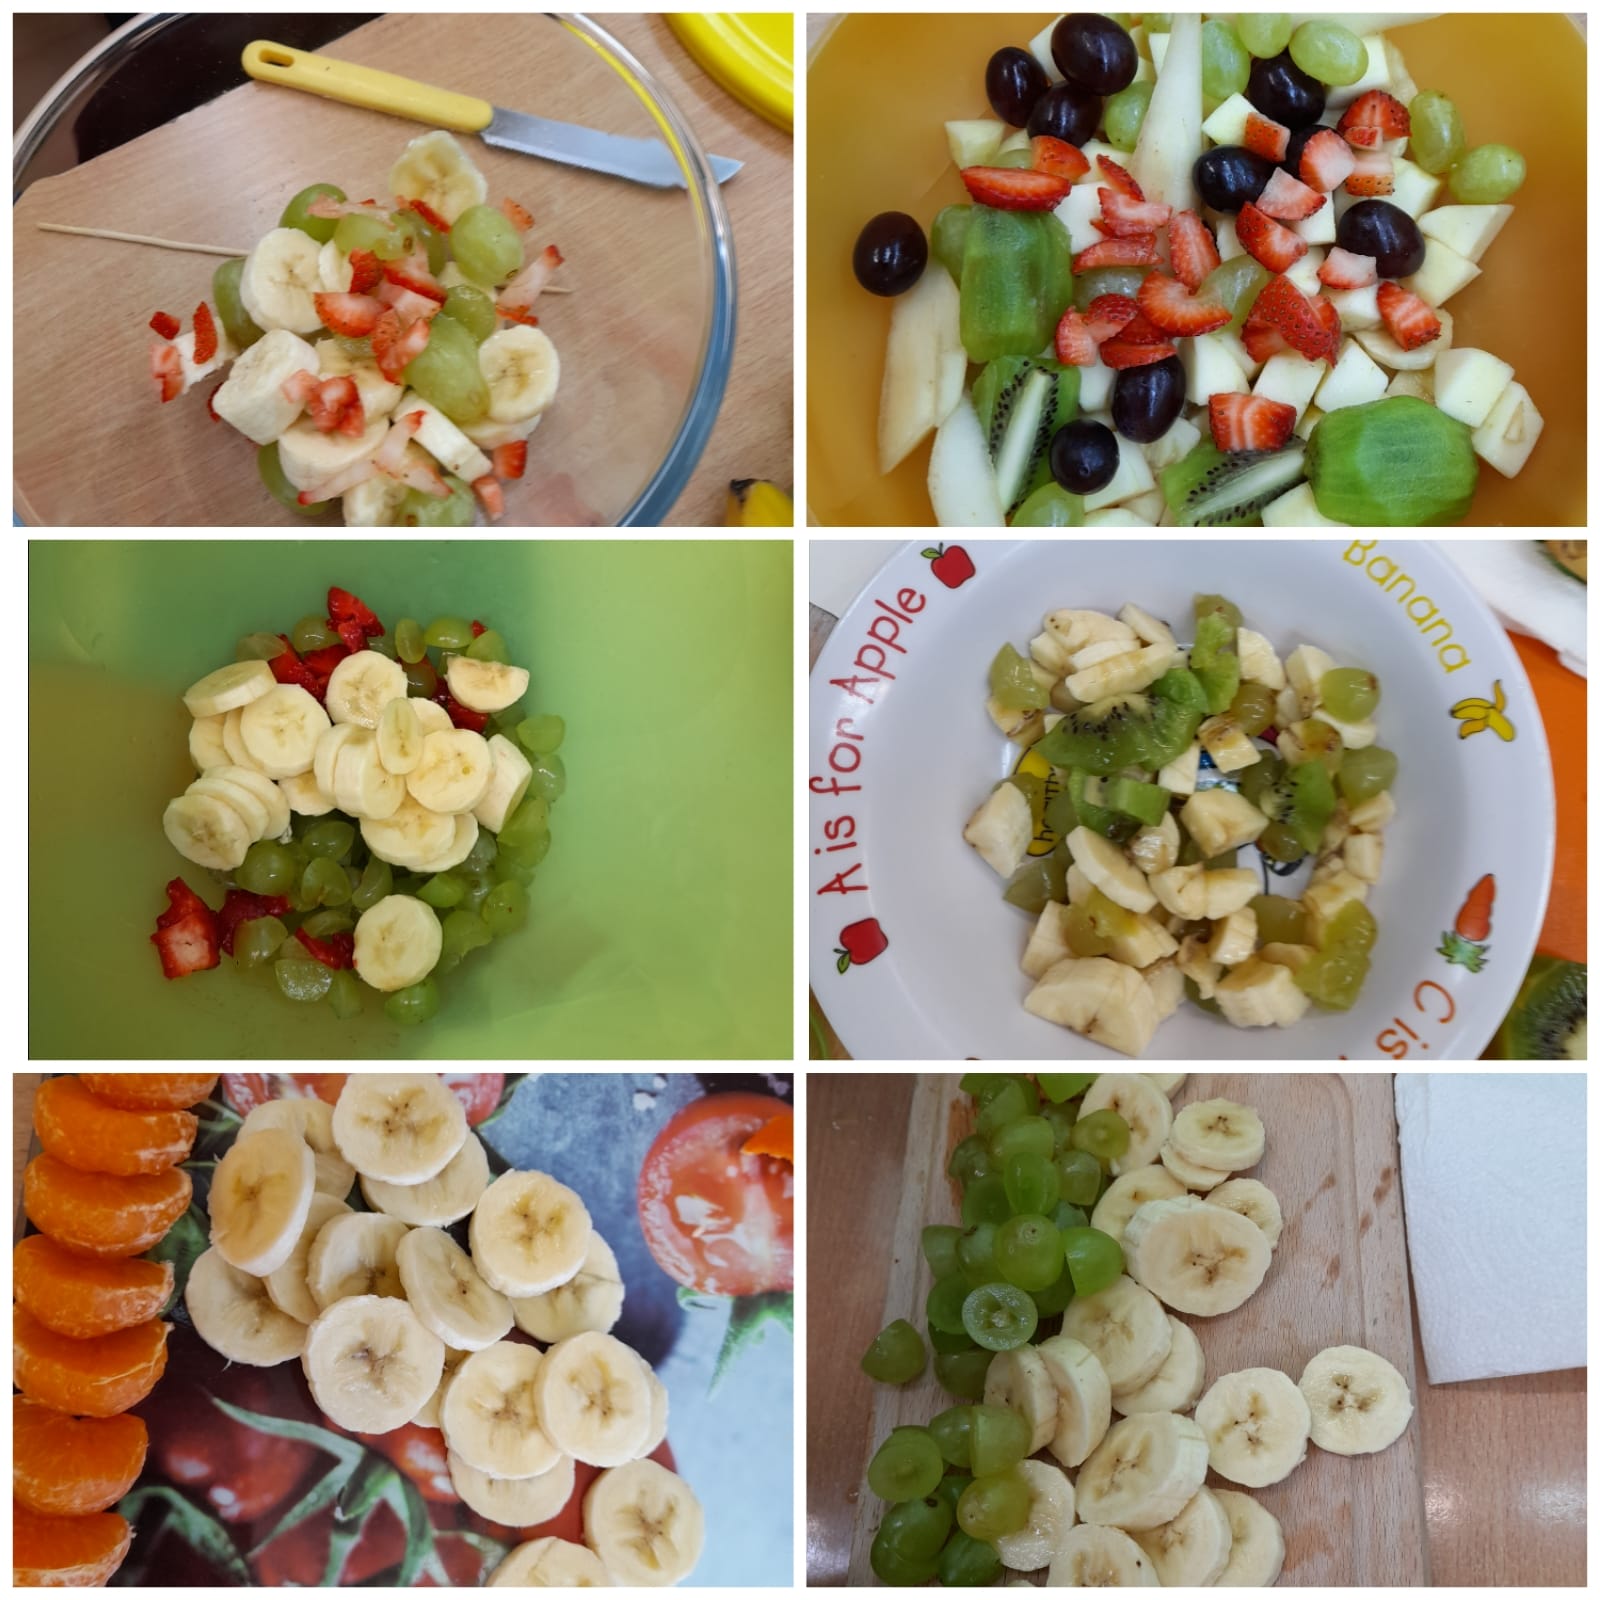 Zdjęcia kolorowych sałatek owocowych przygotowanych przez dzieci, banany, kiwi, truskawki